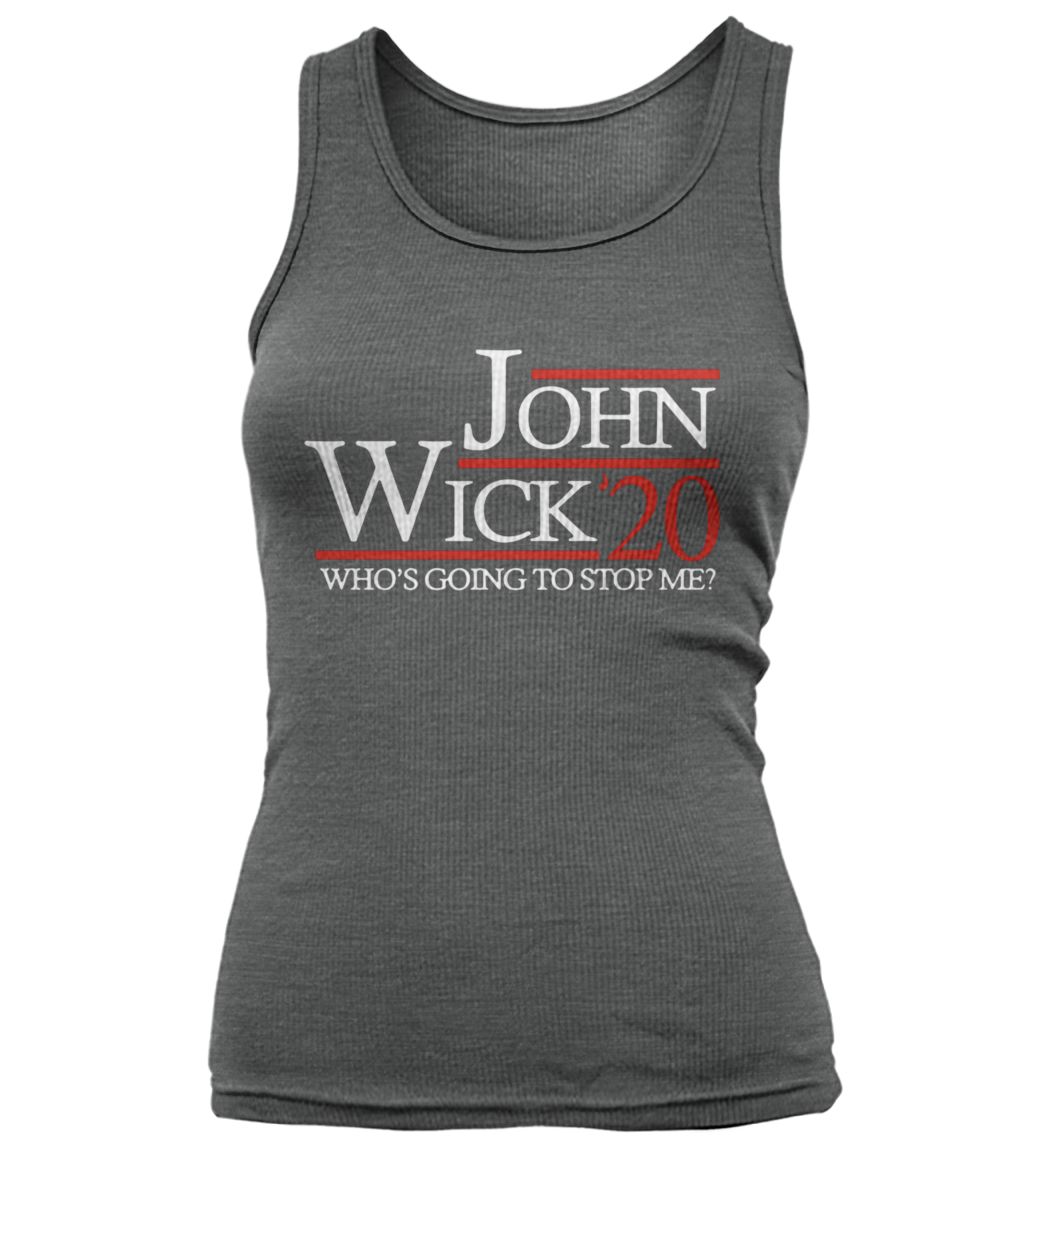 John wick 20 who's going to stop me women's tank top